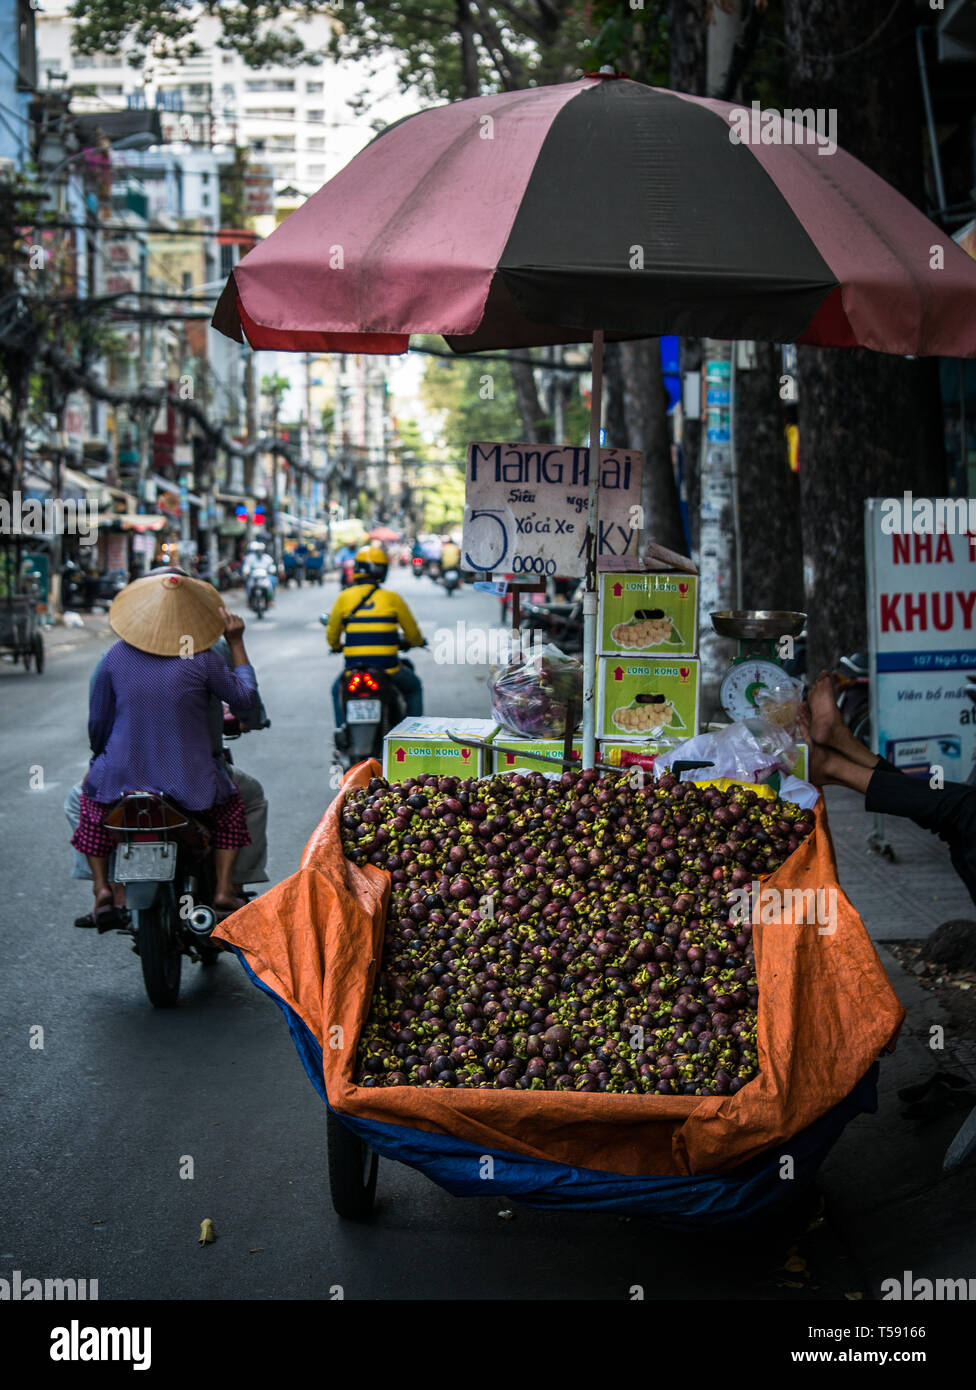 Stand de la route avec le panier plein de fruits mangoustan et les motos qui passent, Ho Chi Minh City, Vietnam, Asie Banque D'Images